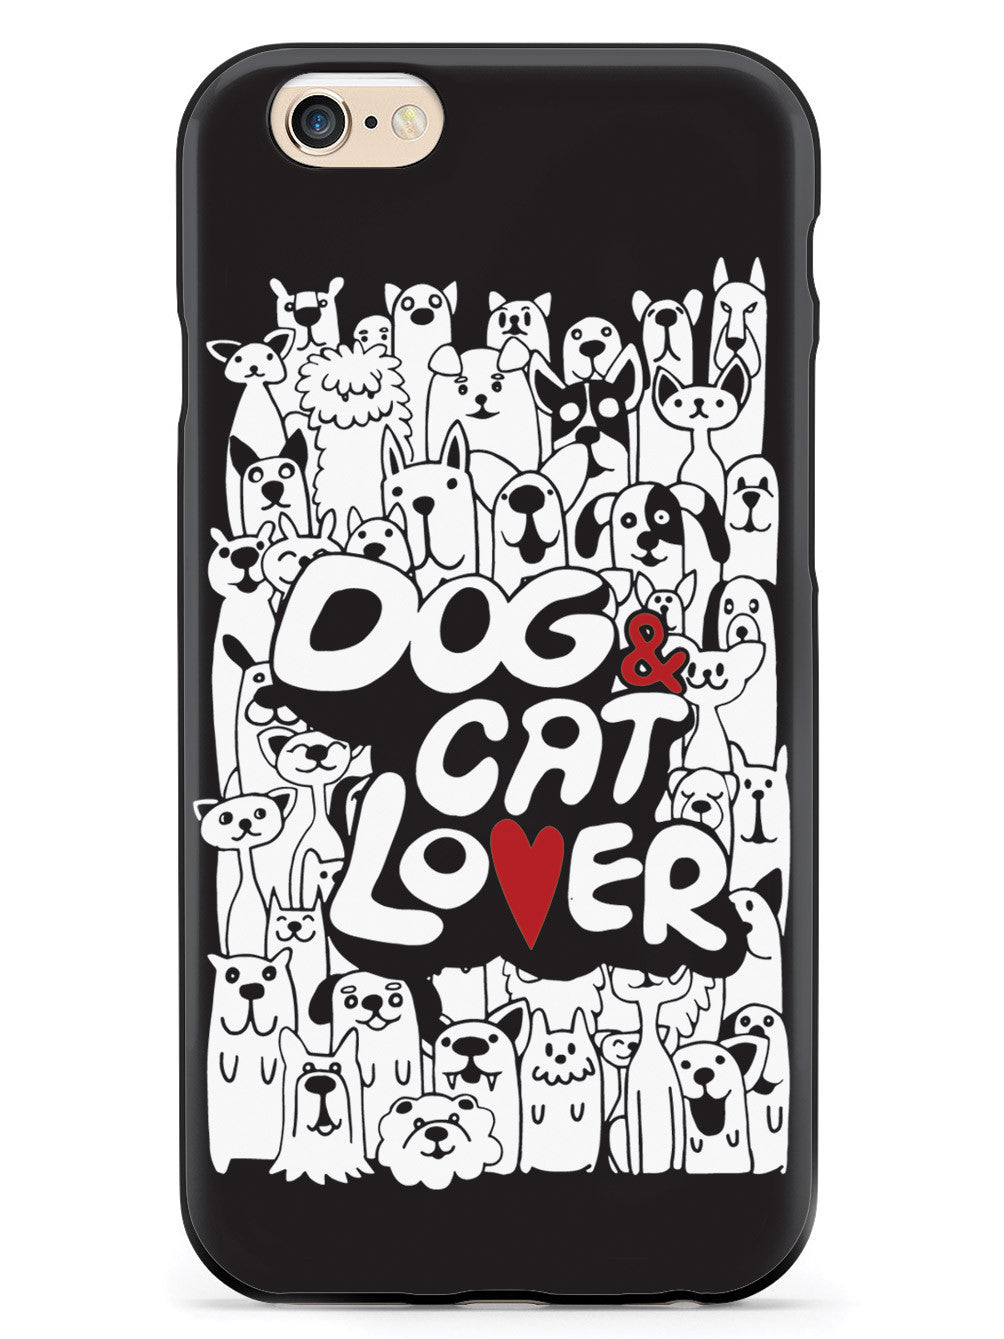 Dog & Cat Lover - Black Case